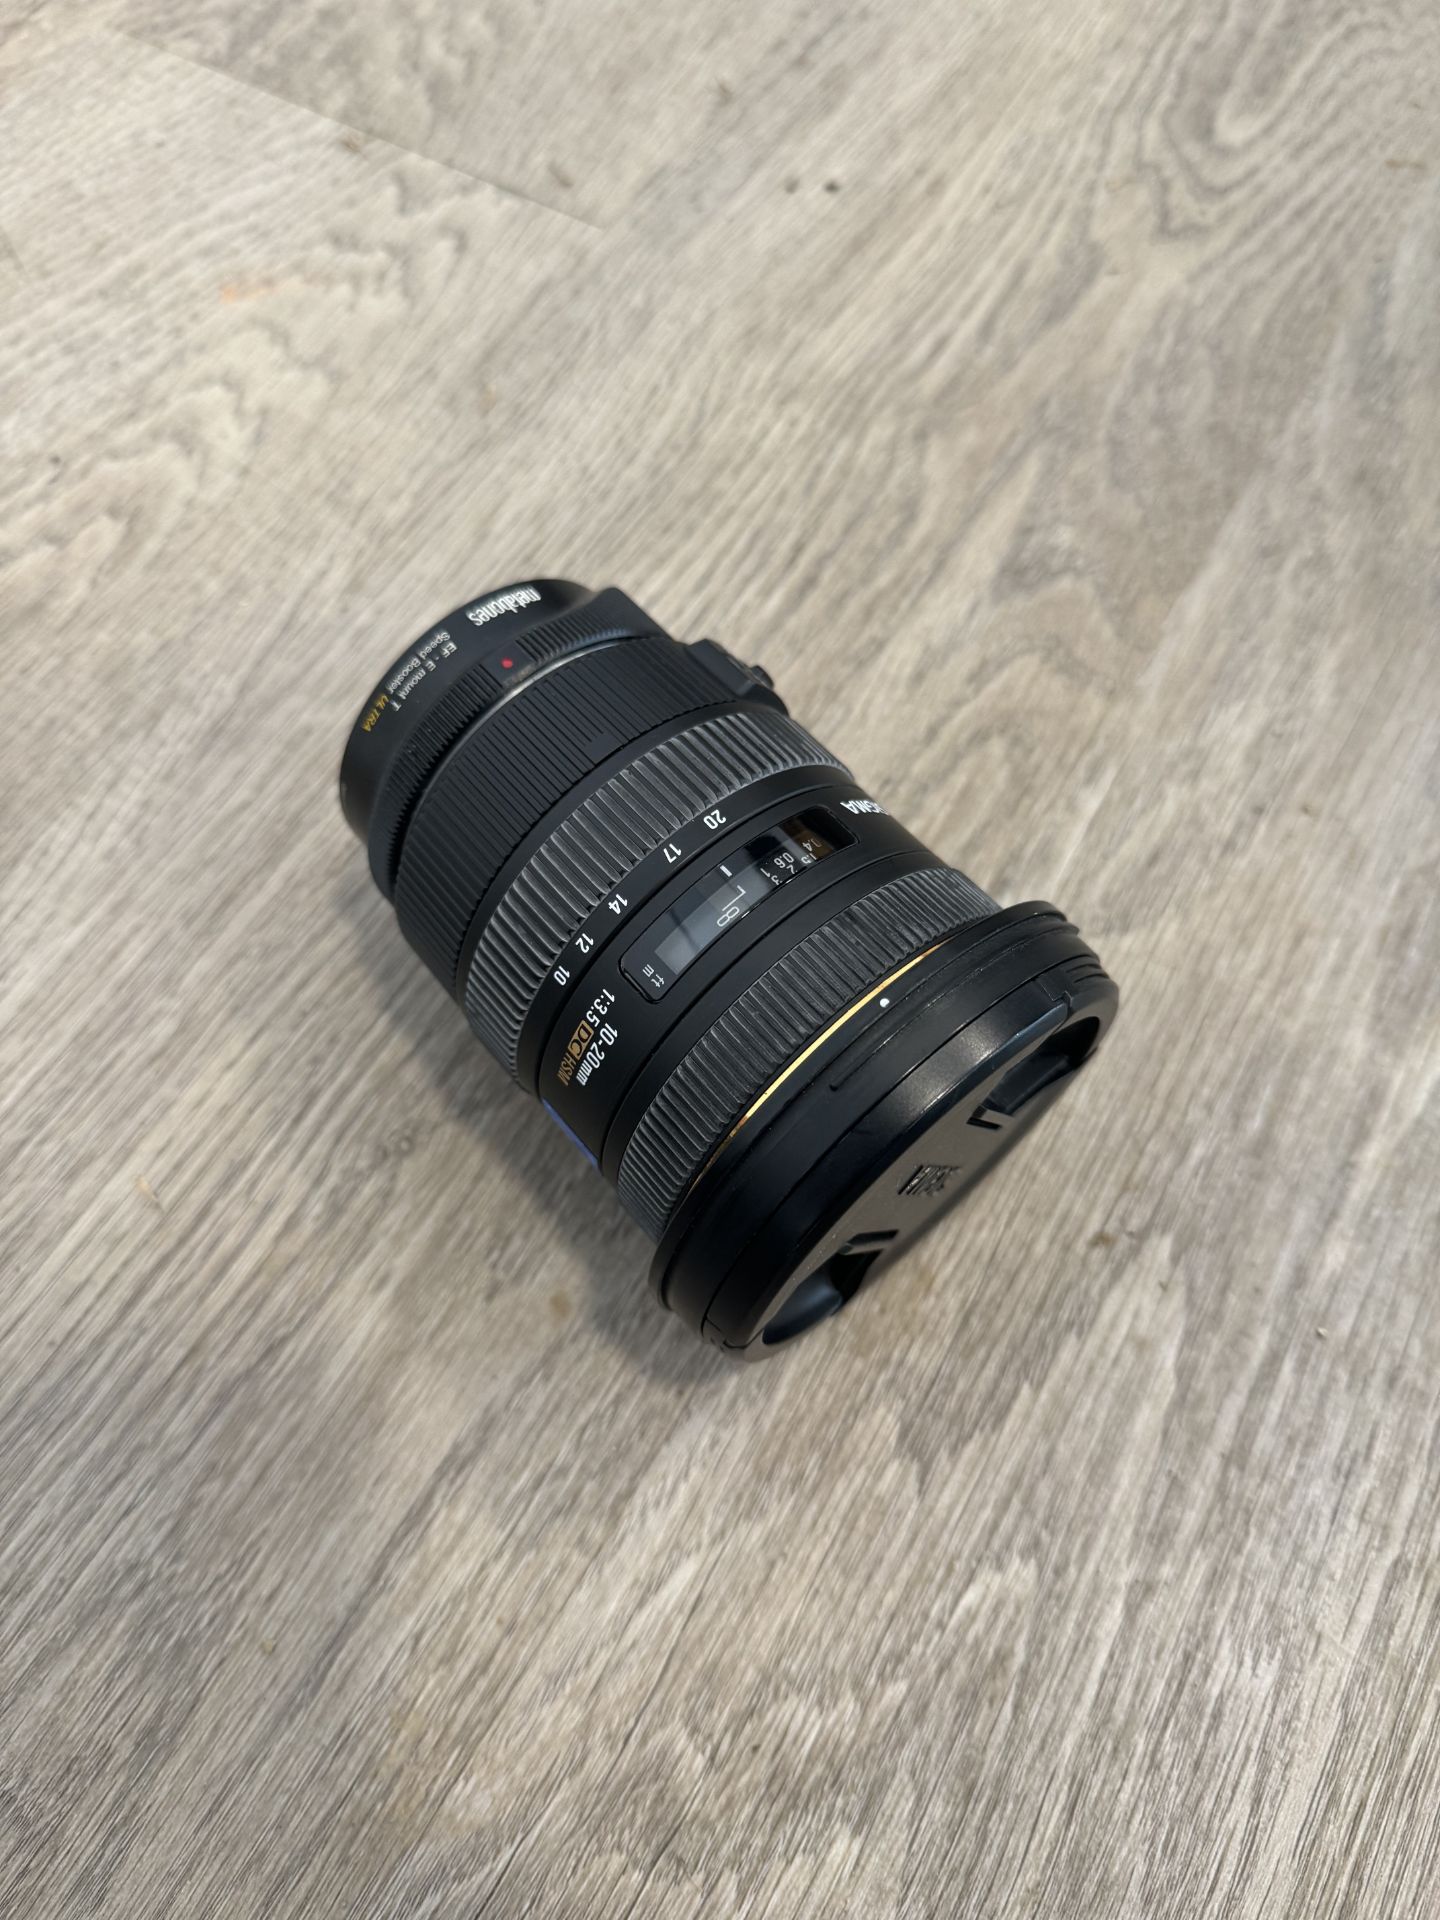 Sigma 10-20mm EF Lens - Image 2 of 2